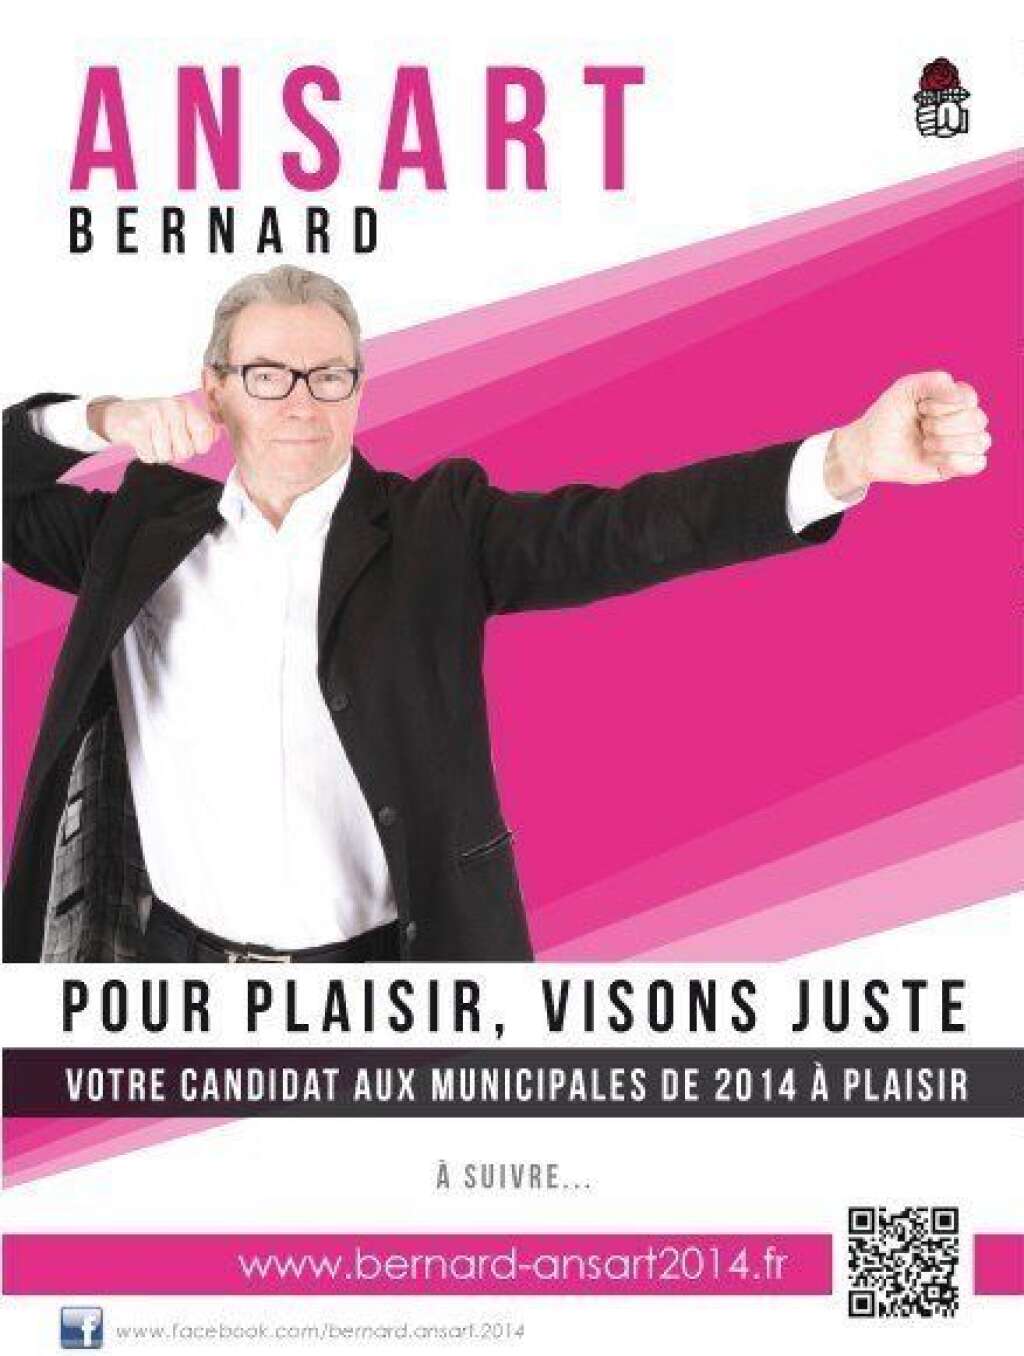 Viser juste - Non, Bernard Ansart n'est pas candidat au parti du Plaisir mais tête de liste PS à Plaisir dans les Yvelines!  Ce dernier a dévoilé plusieurs affiches de campagne<a href="http://www.bernard-ansart2014.fr/" target="_blank"> sur son site officiel</a>, parmi lesquelles celle-ci, peu conventionnelle, mais qui colle parfaitement à son slogan: viser juste.